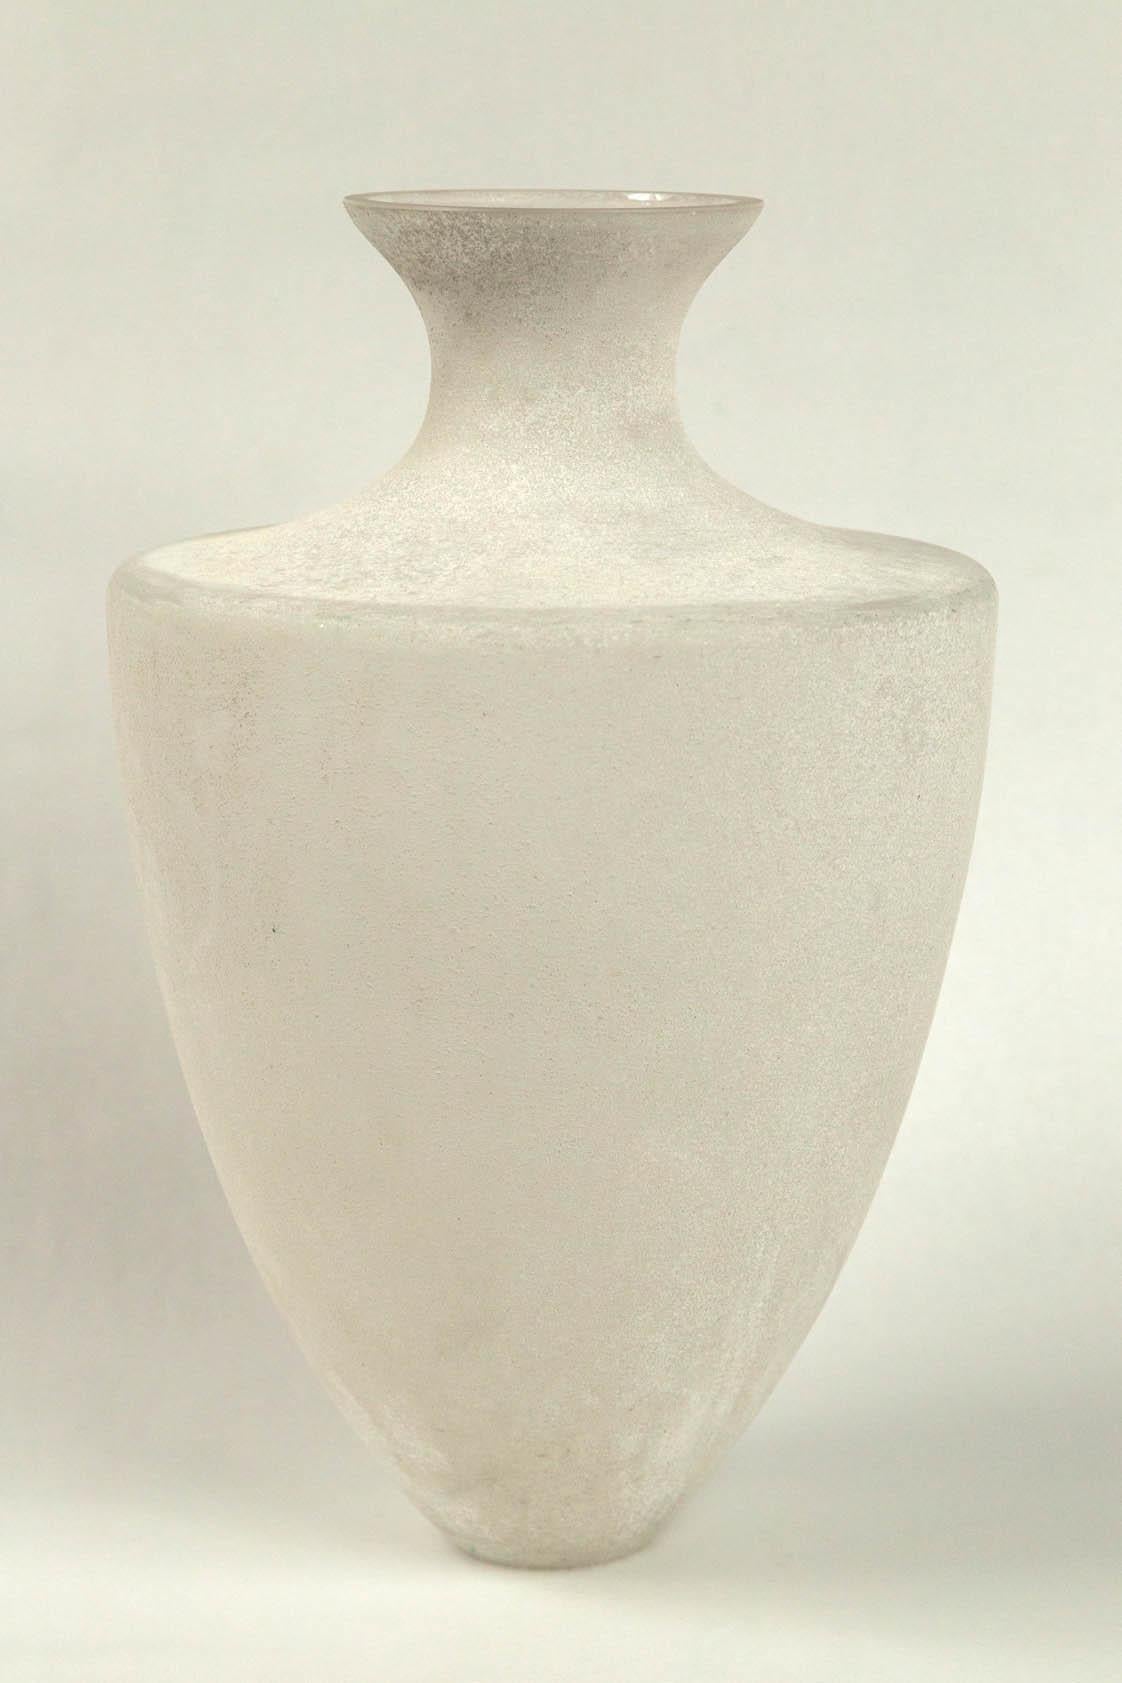 Scavo-Glasvase von Seguso, Murano, Italien, 20. Jahrhundert. Eine große Vase in neoklassischer Form mit Scavo-Finish (mattiert). Scavo-Glas wurde in den 1940er Jahren in Murano entwickelt, um ausgegrabenes antikes römisches Glas zu simulieren.